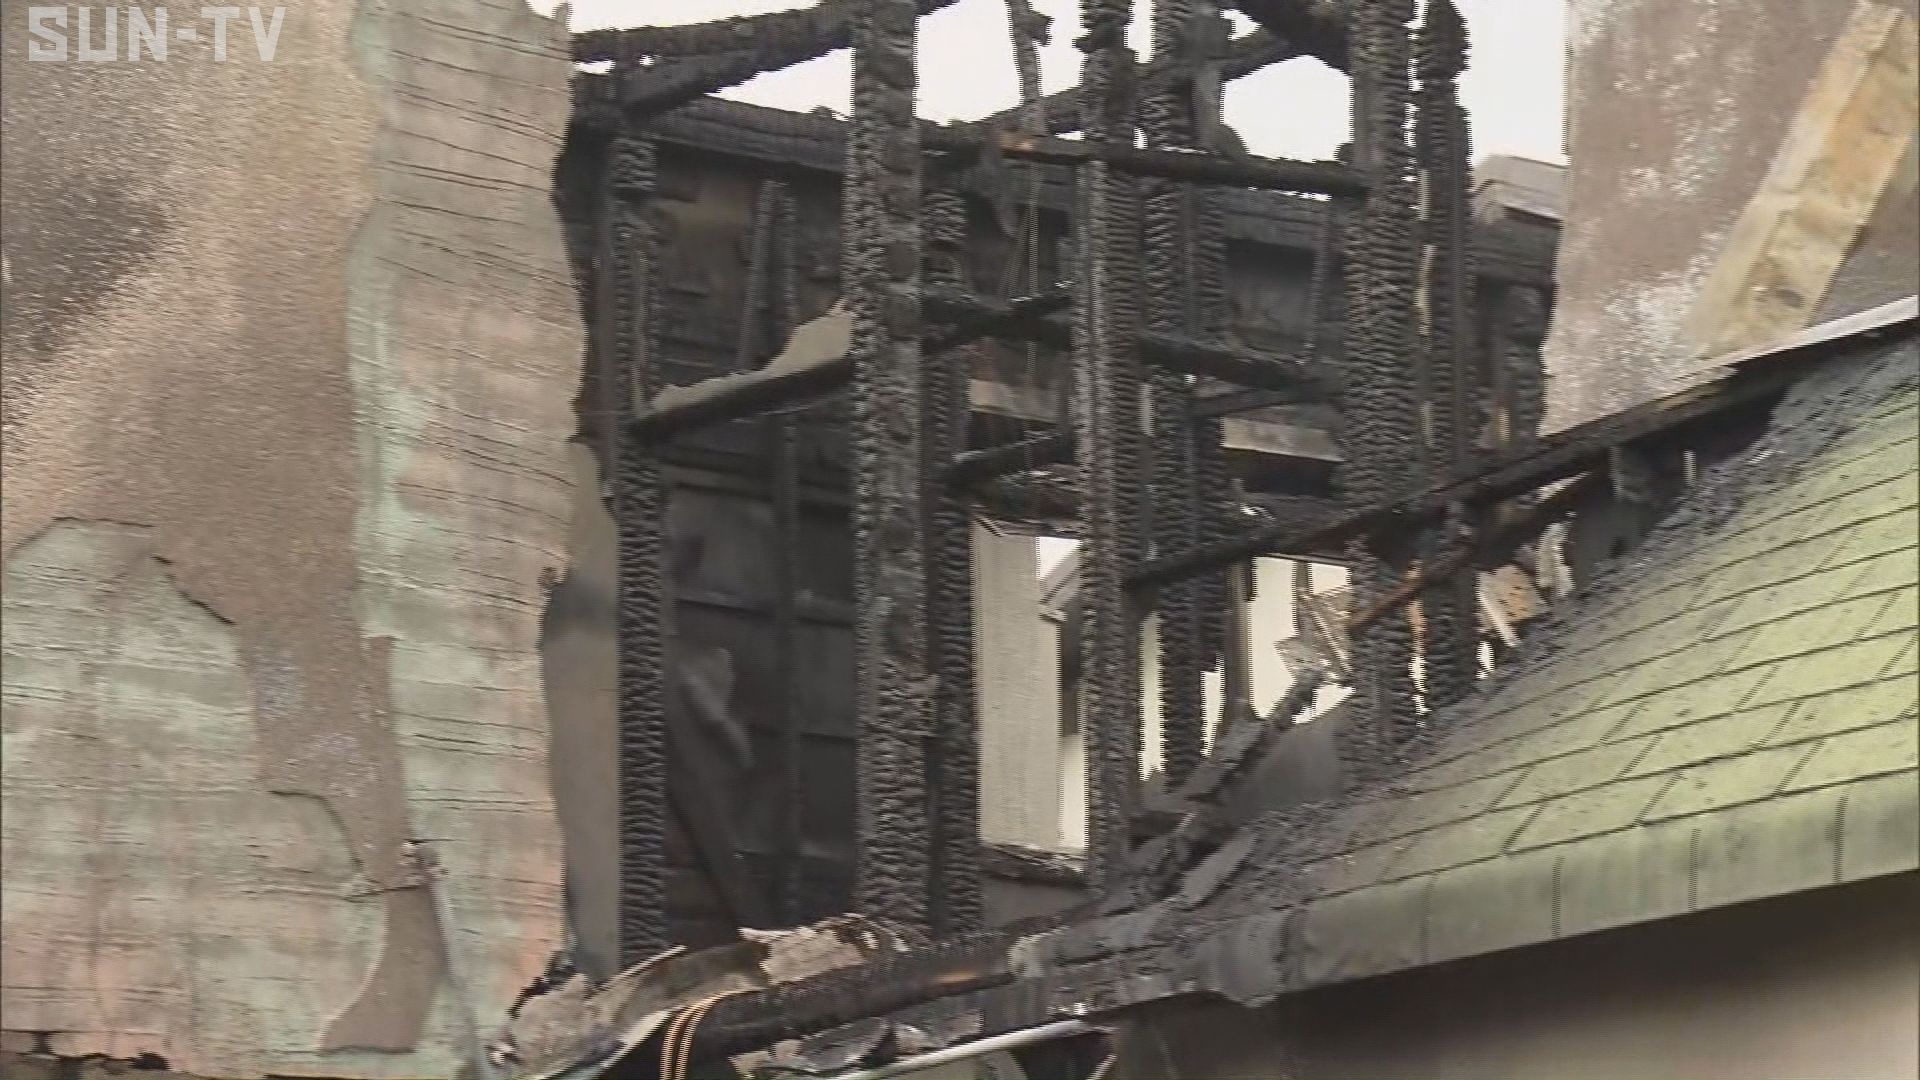 伊丹市の民家で火事 焼け跡から1人の遺体 サンテレビニュース